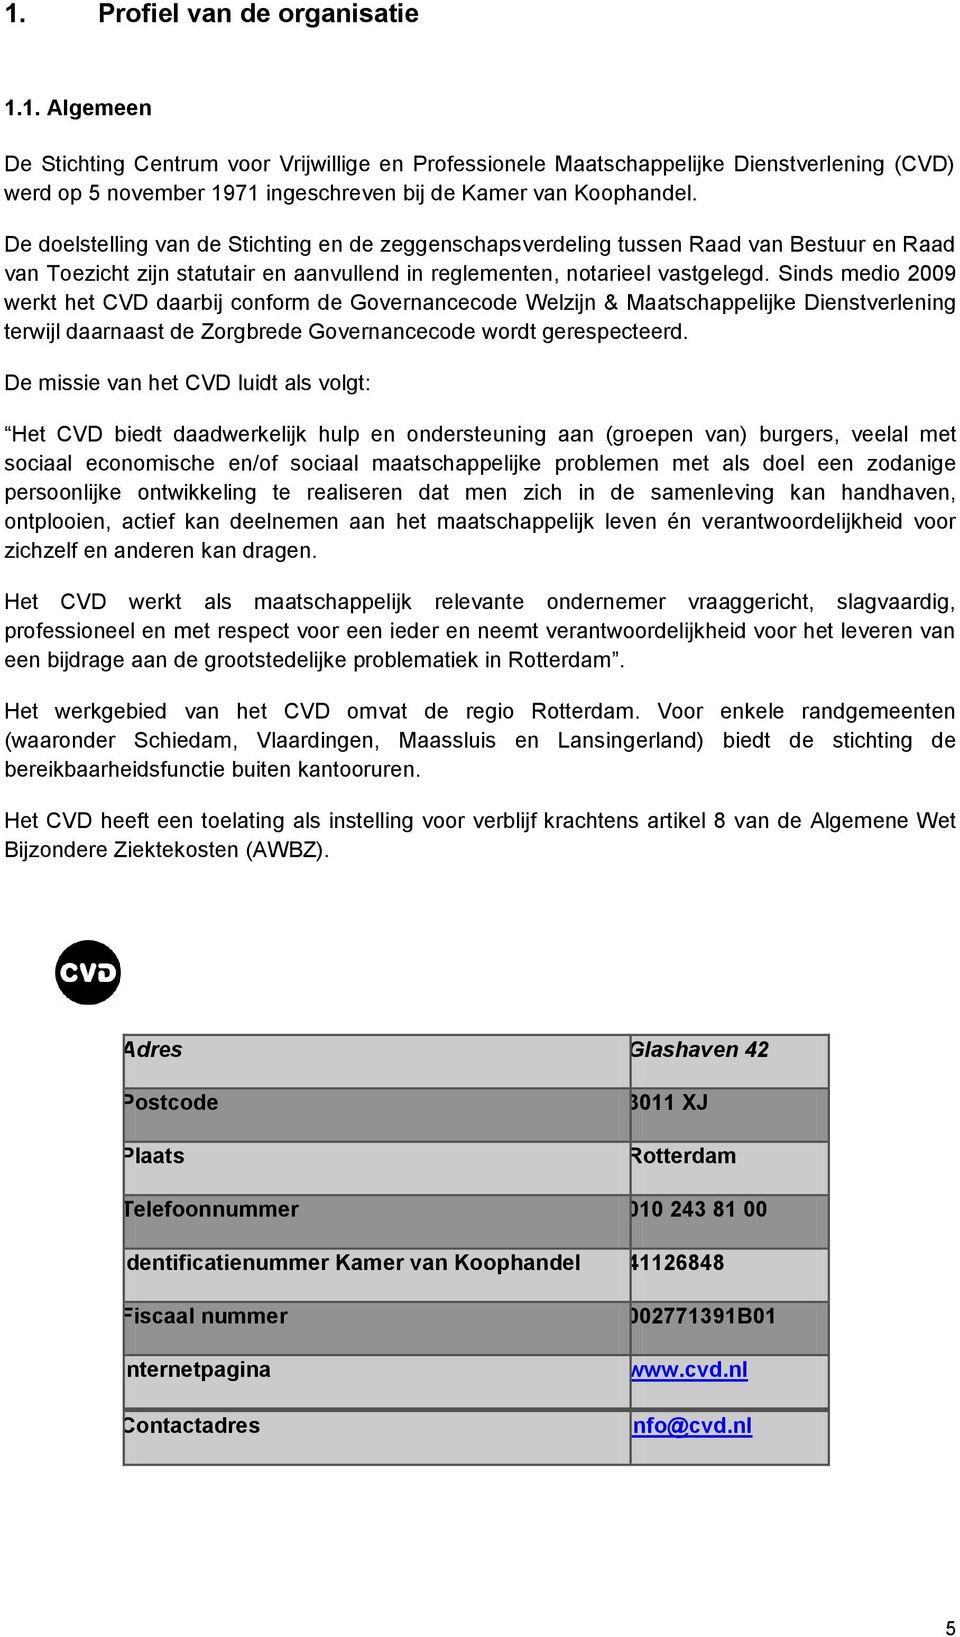 Sinds medio 2009 werkt het CVD daarbij conform de Governancecode Welzijn & Maatschappelijke Dienstverlening terwijl daarnaast de Zorgbrede Governancecode wordt gerespecteerd.